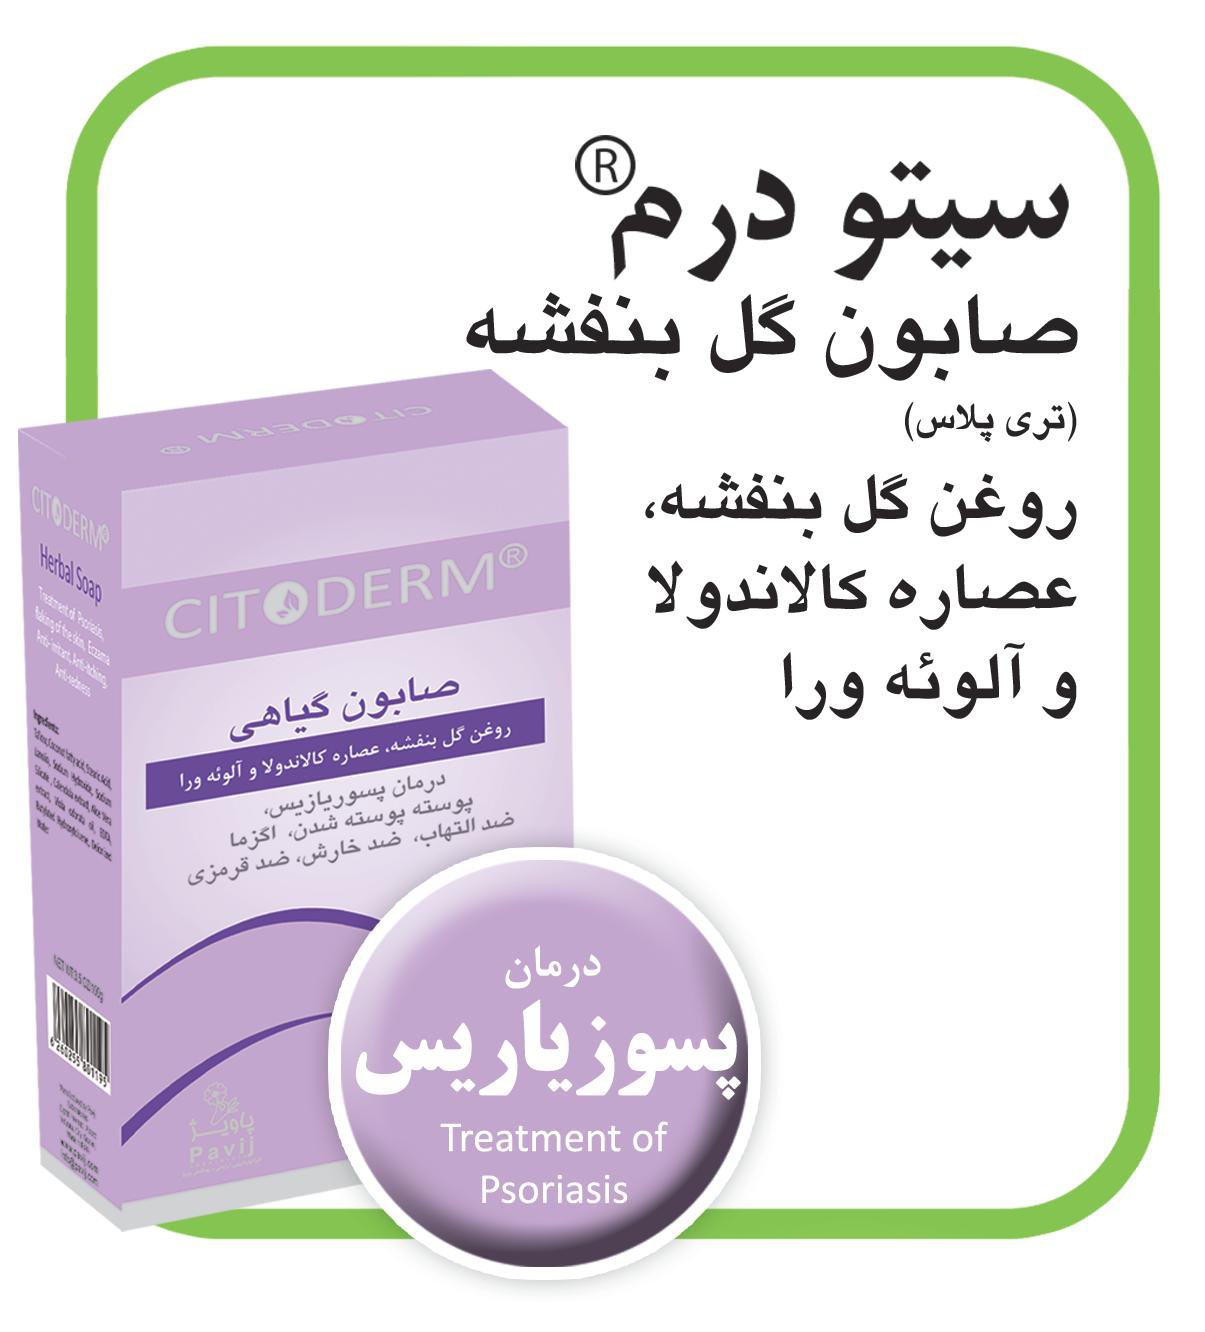 Herbal soap + 3 Cytoderm